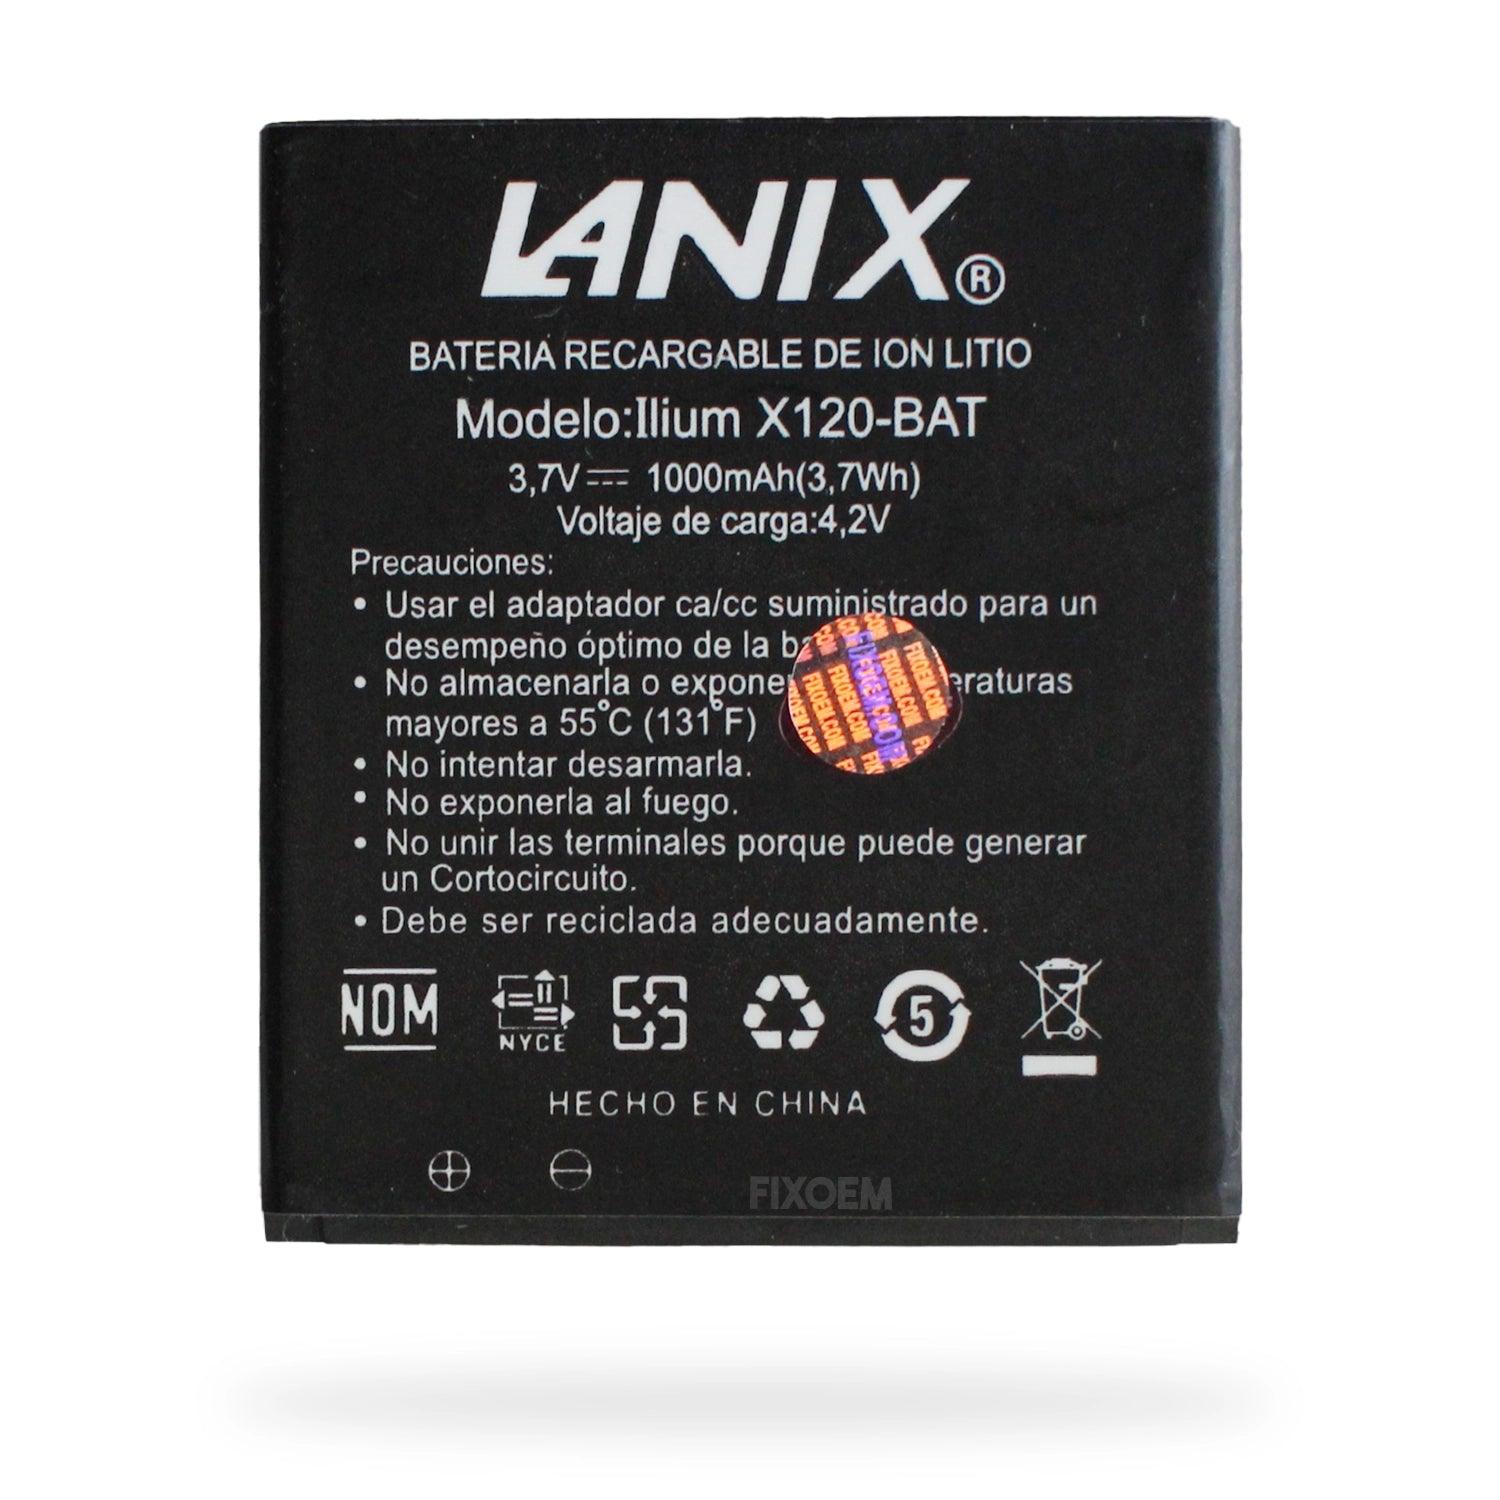 Bateria Lanix Ilium X120-Bat. a solo $ 110.00 Refaccion y puestos celulares, refurbish y microelectronica.- FixOEM